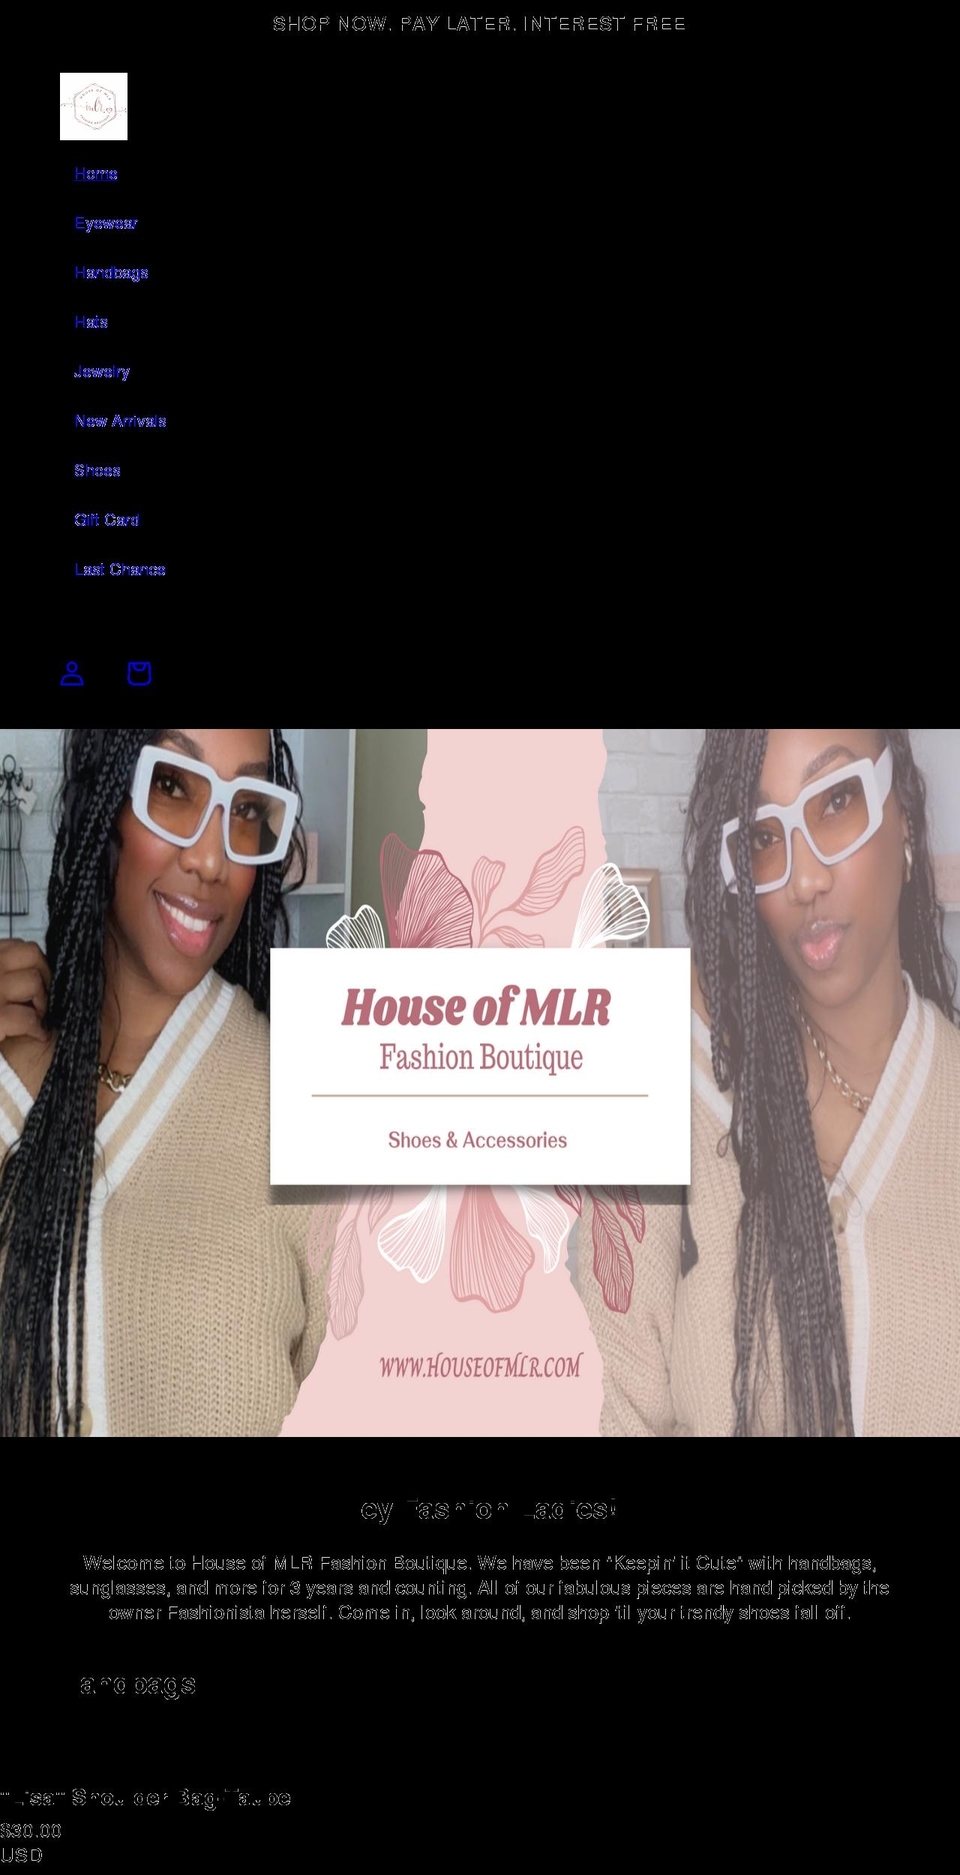 houseofmlr.com shopify website screenshot